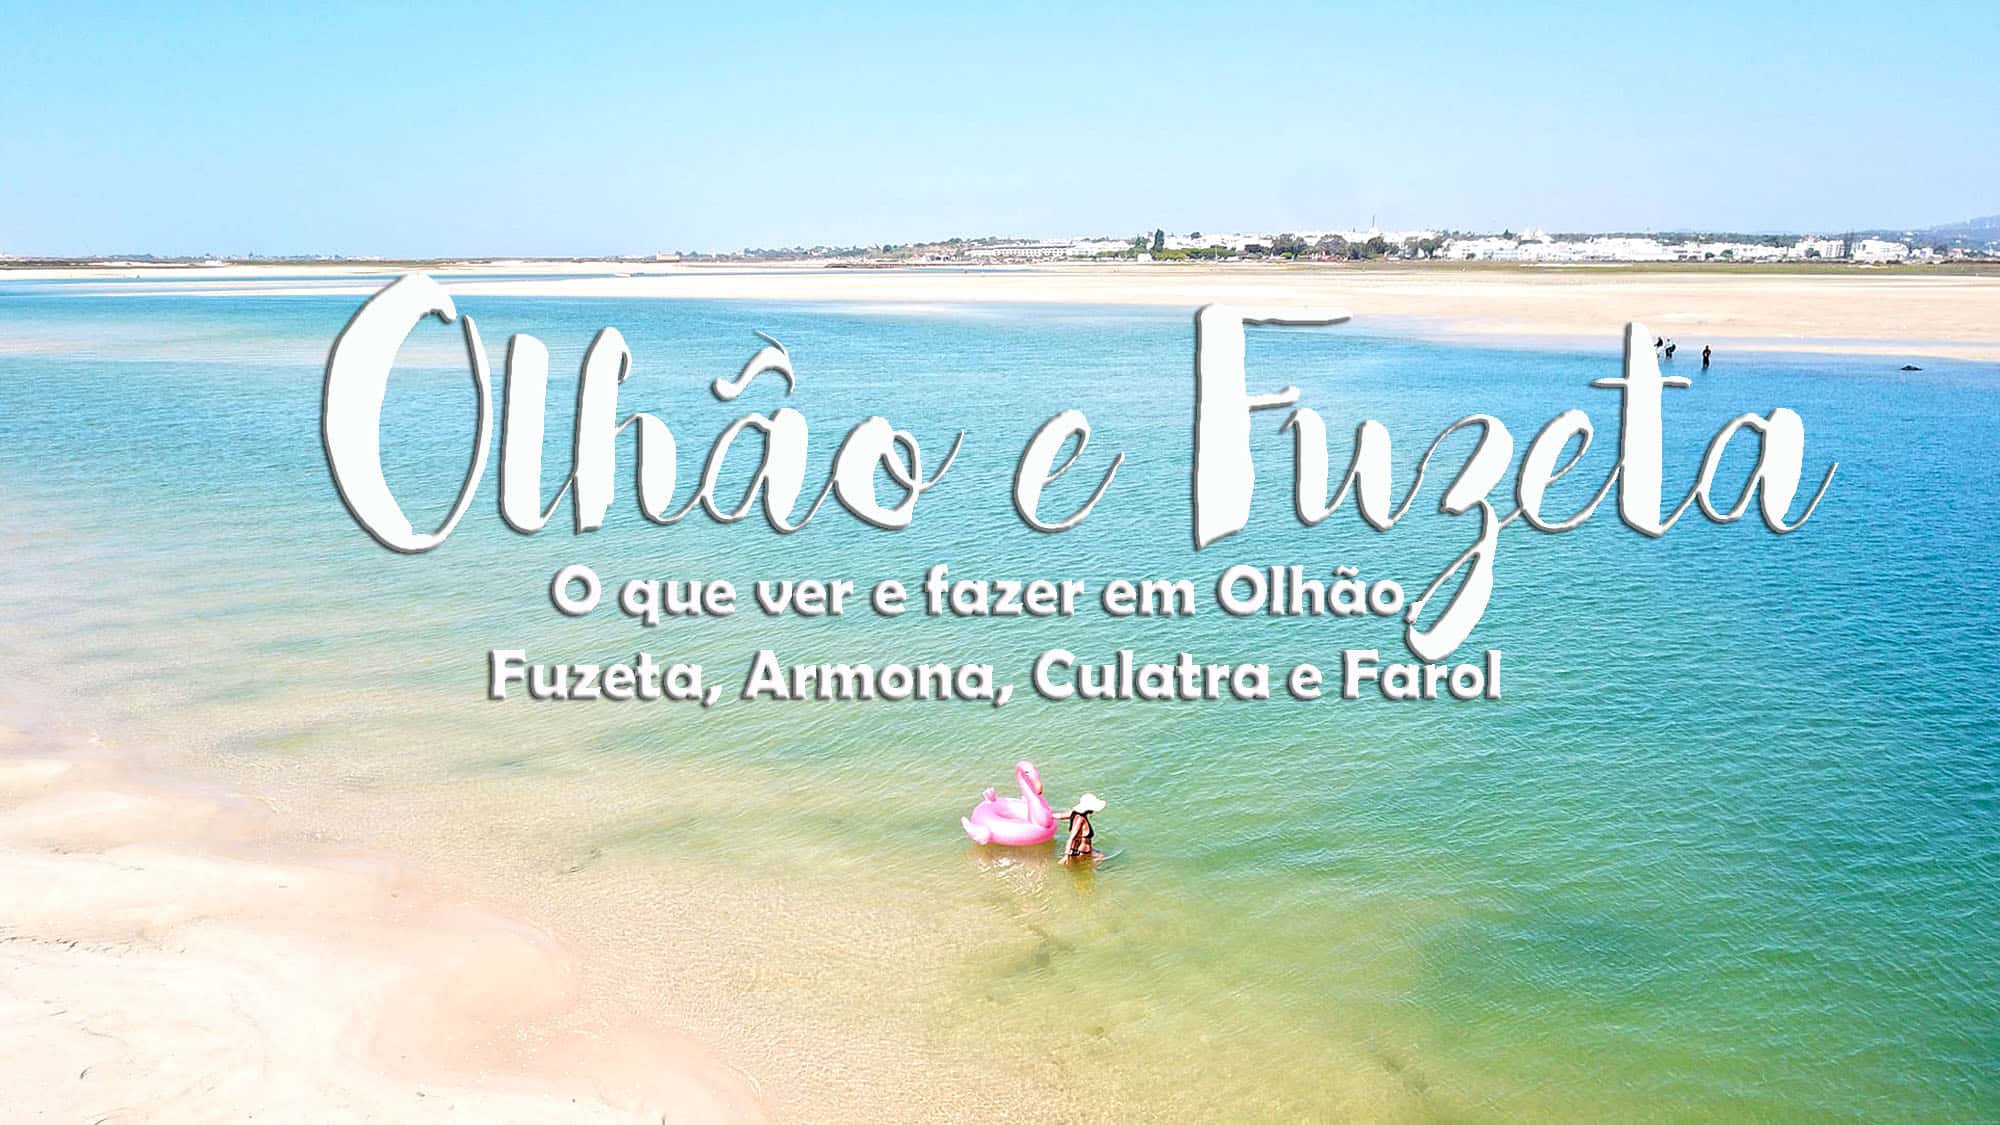 Visitar OLHÃO e a PRAIA DA FUZETA, o que ver e fazer desde a ilha da Culatra, Farol e Armona até à Fuzeta, o nosso recanto preferido do Algarve